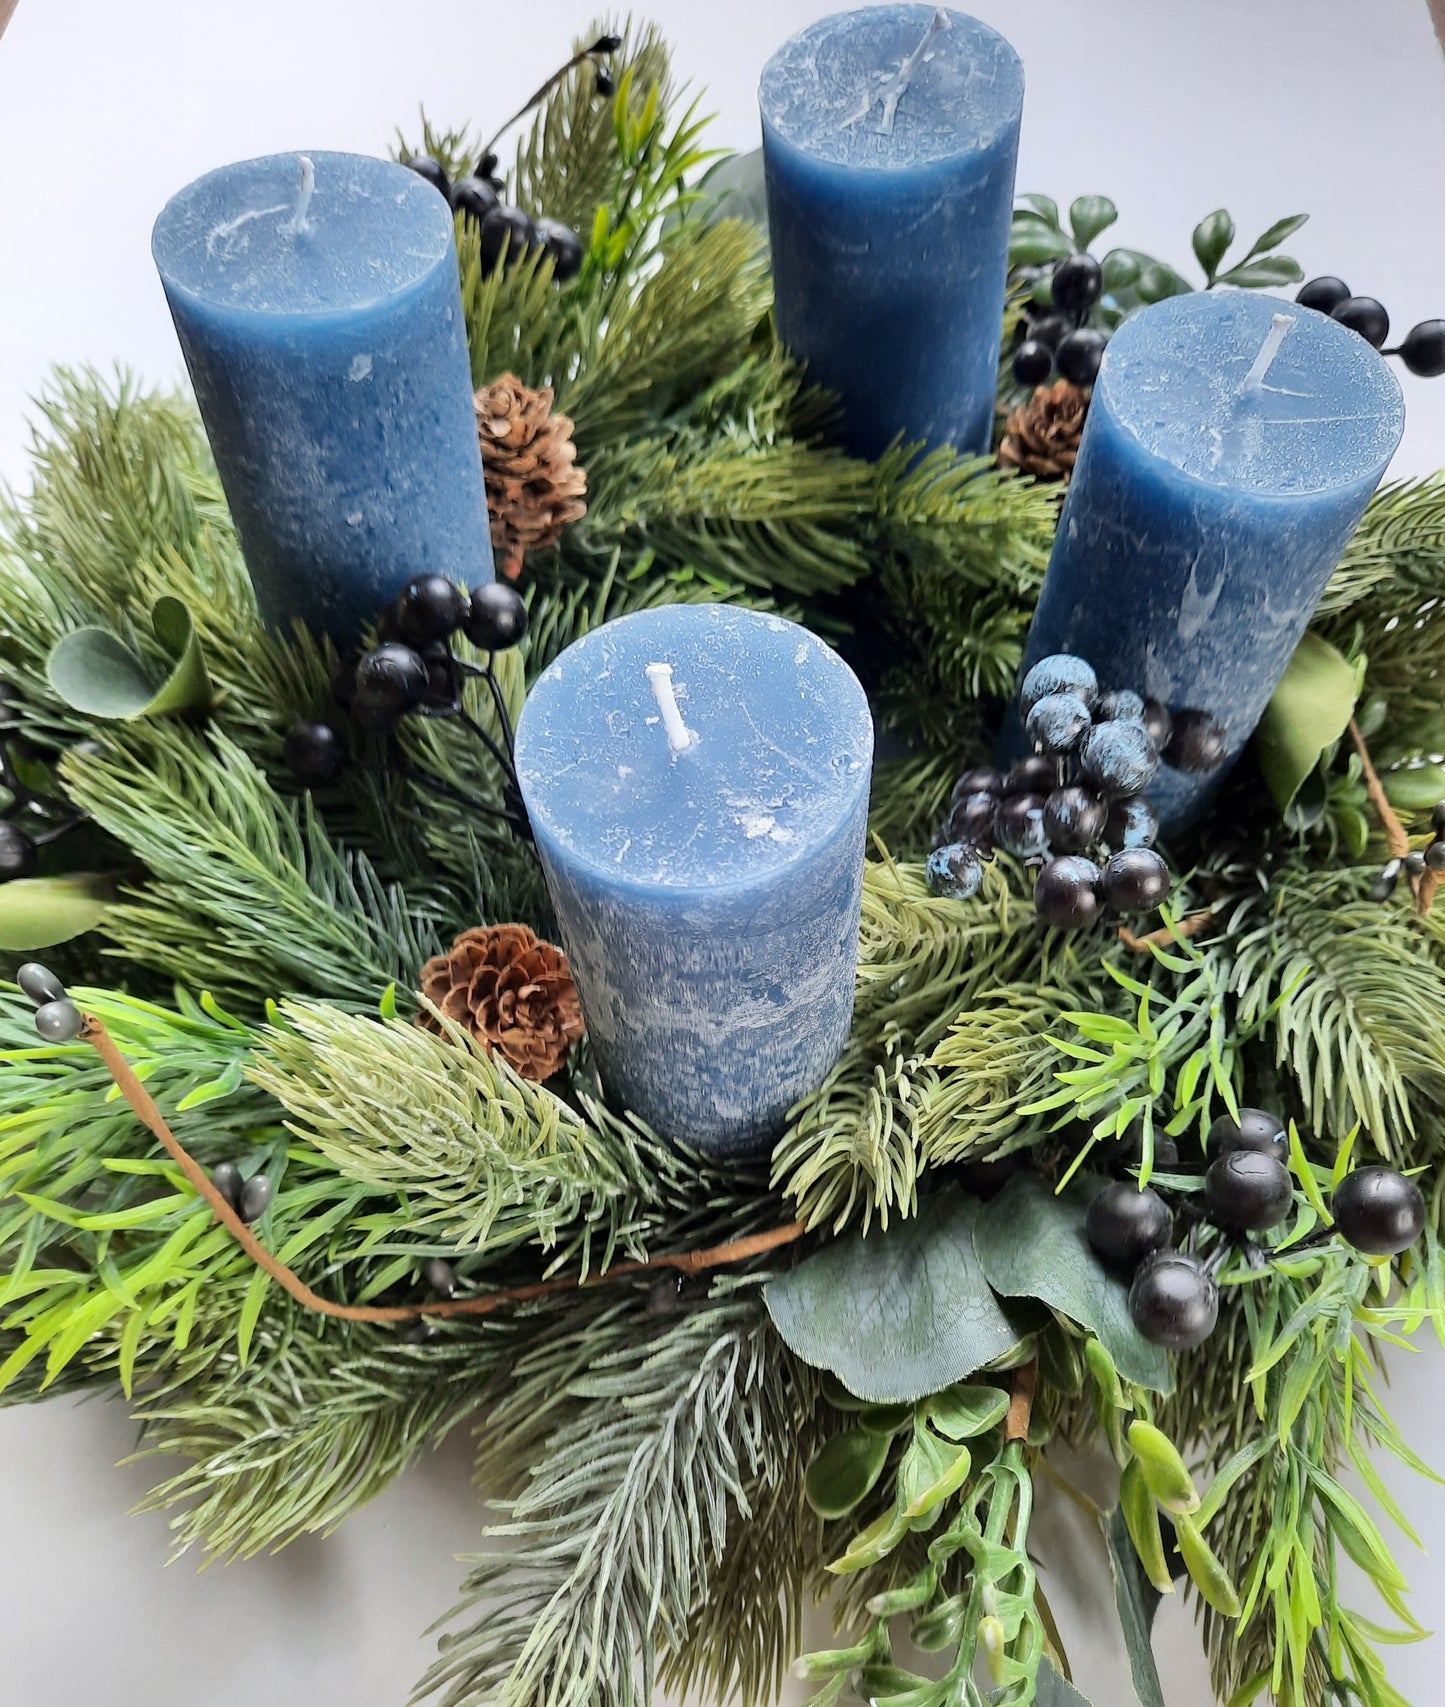 Adventskranz mit blauen Beeren